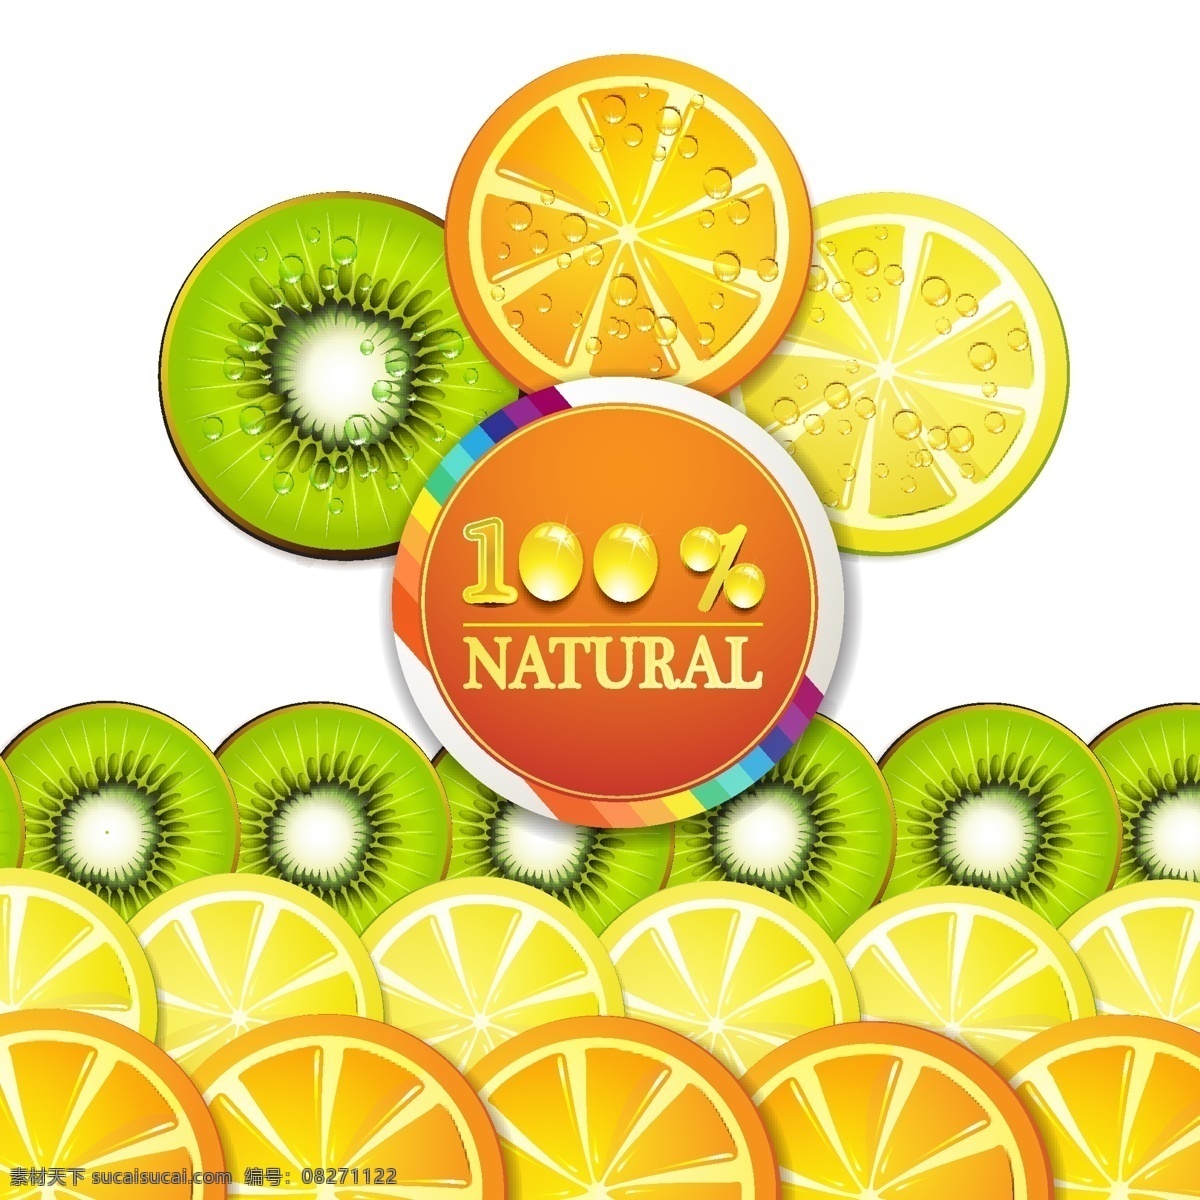 动感水果 动感 水果 柠檬 柑橘 猕猴桃 新鲜 绿色 黄色 矢量素材 生物世界 矢量